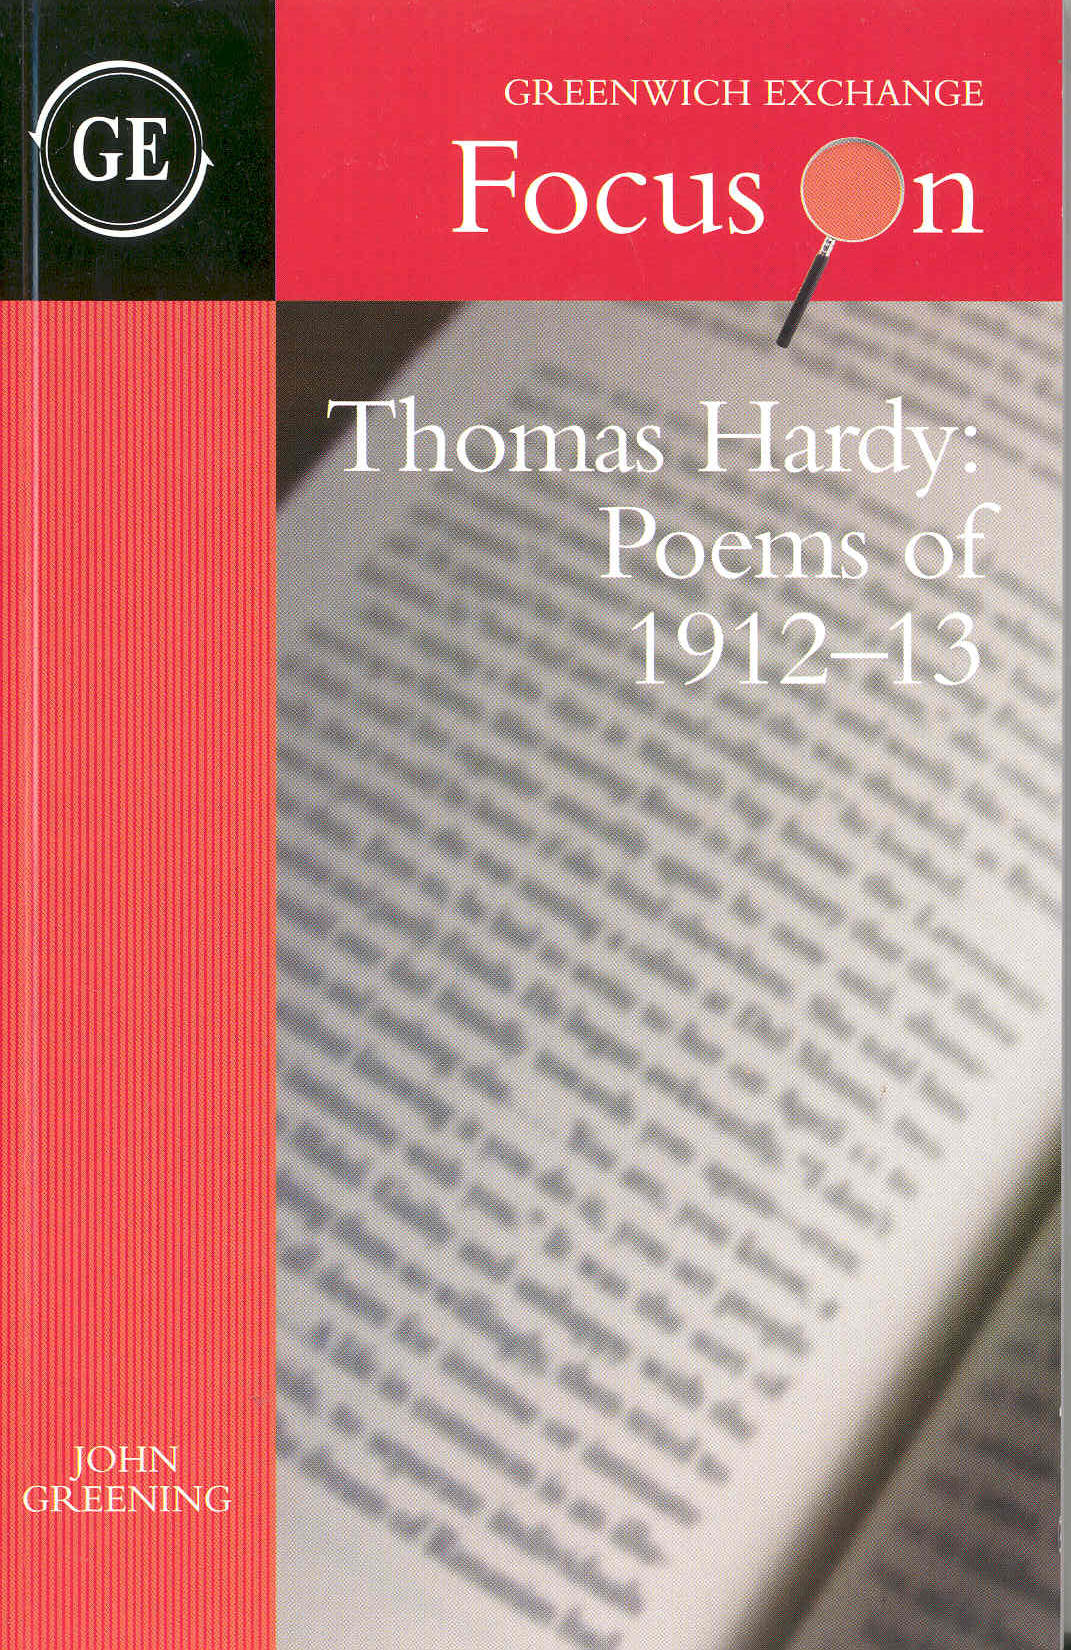 Description: Description: Description: \\iis03\f$\inetpub\wwwroot\JDG\images\Poems of Thomas Hardy.jpg